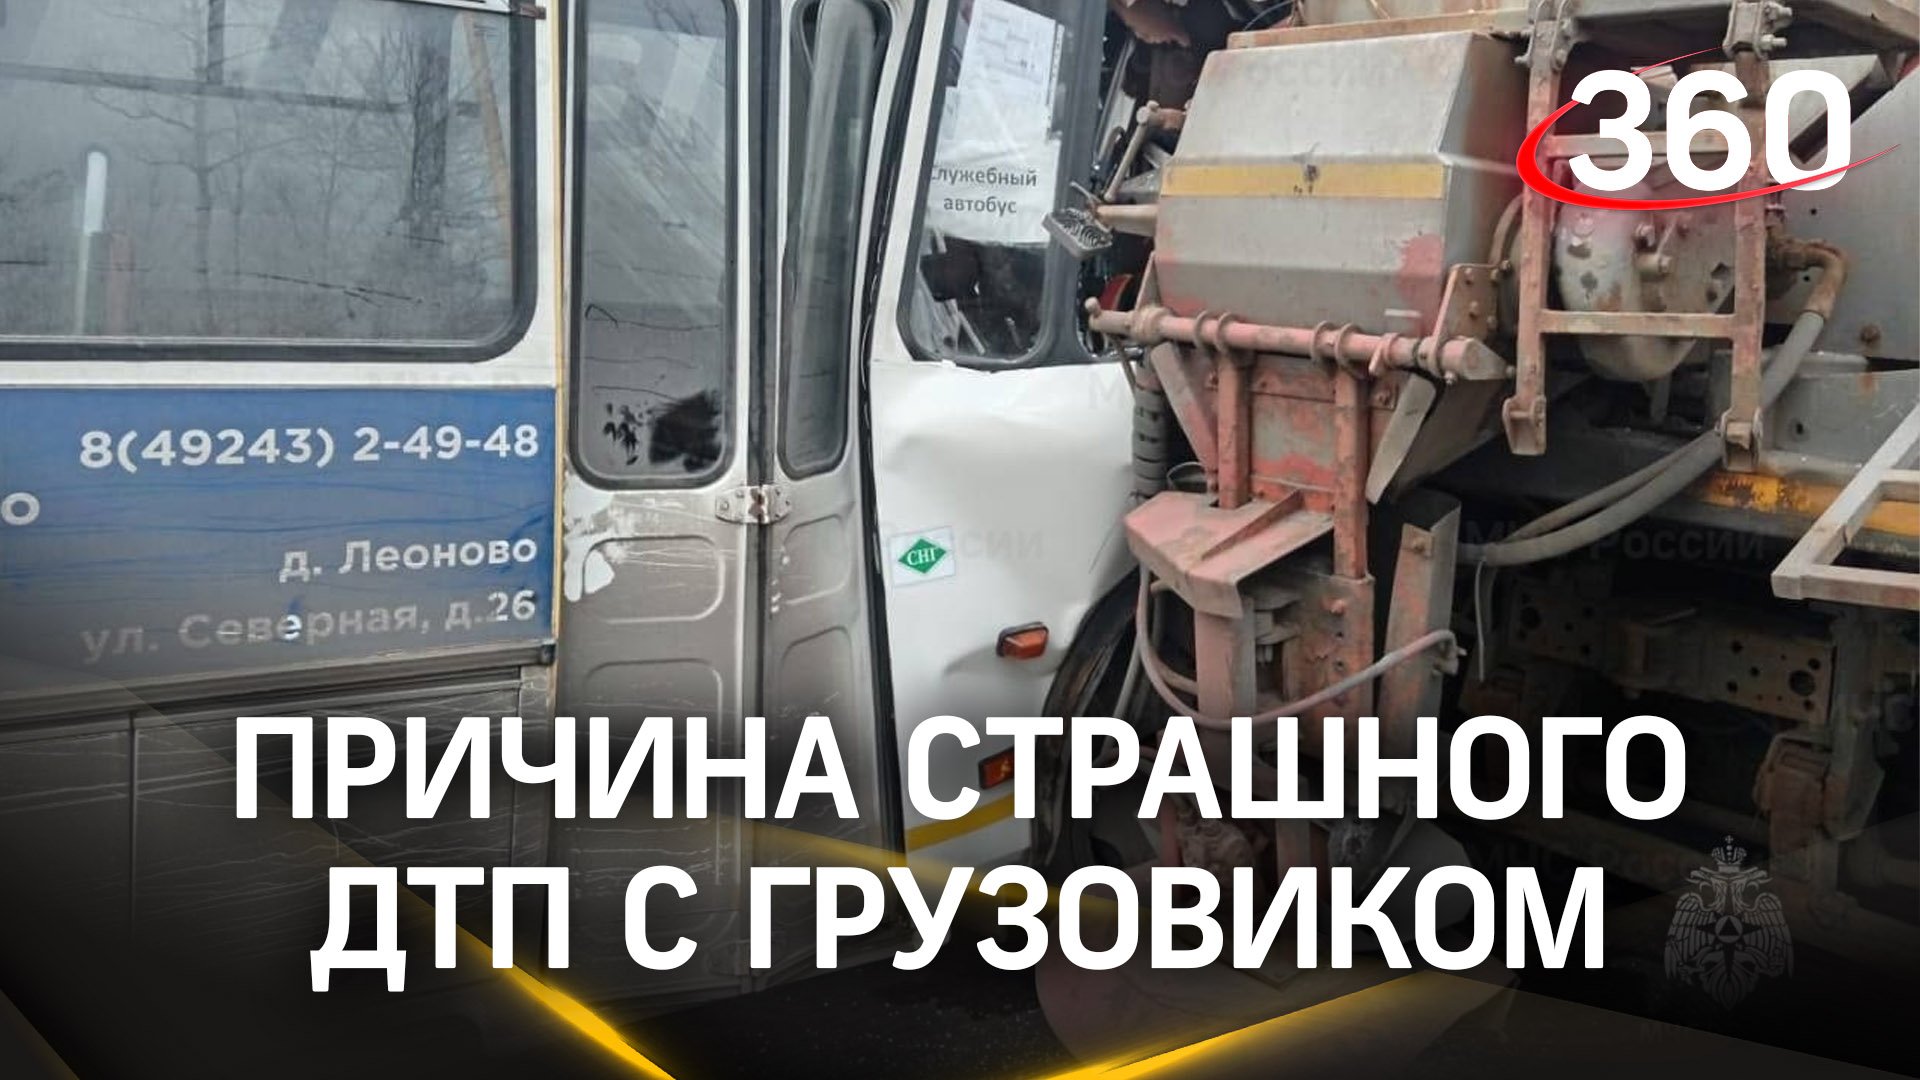 Водитель автобуса нарушил ПДД - причина страшной аварии с грузовиком под Владимиром